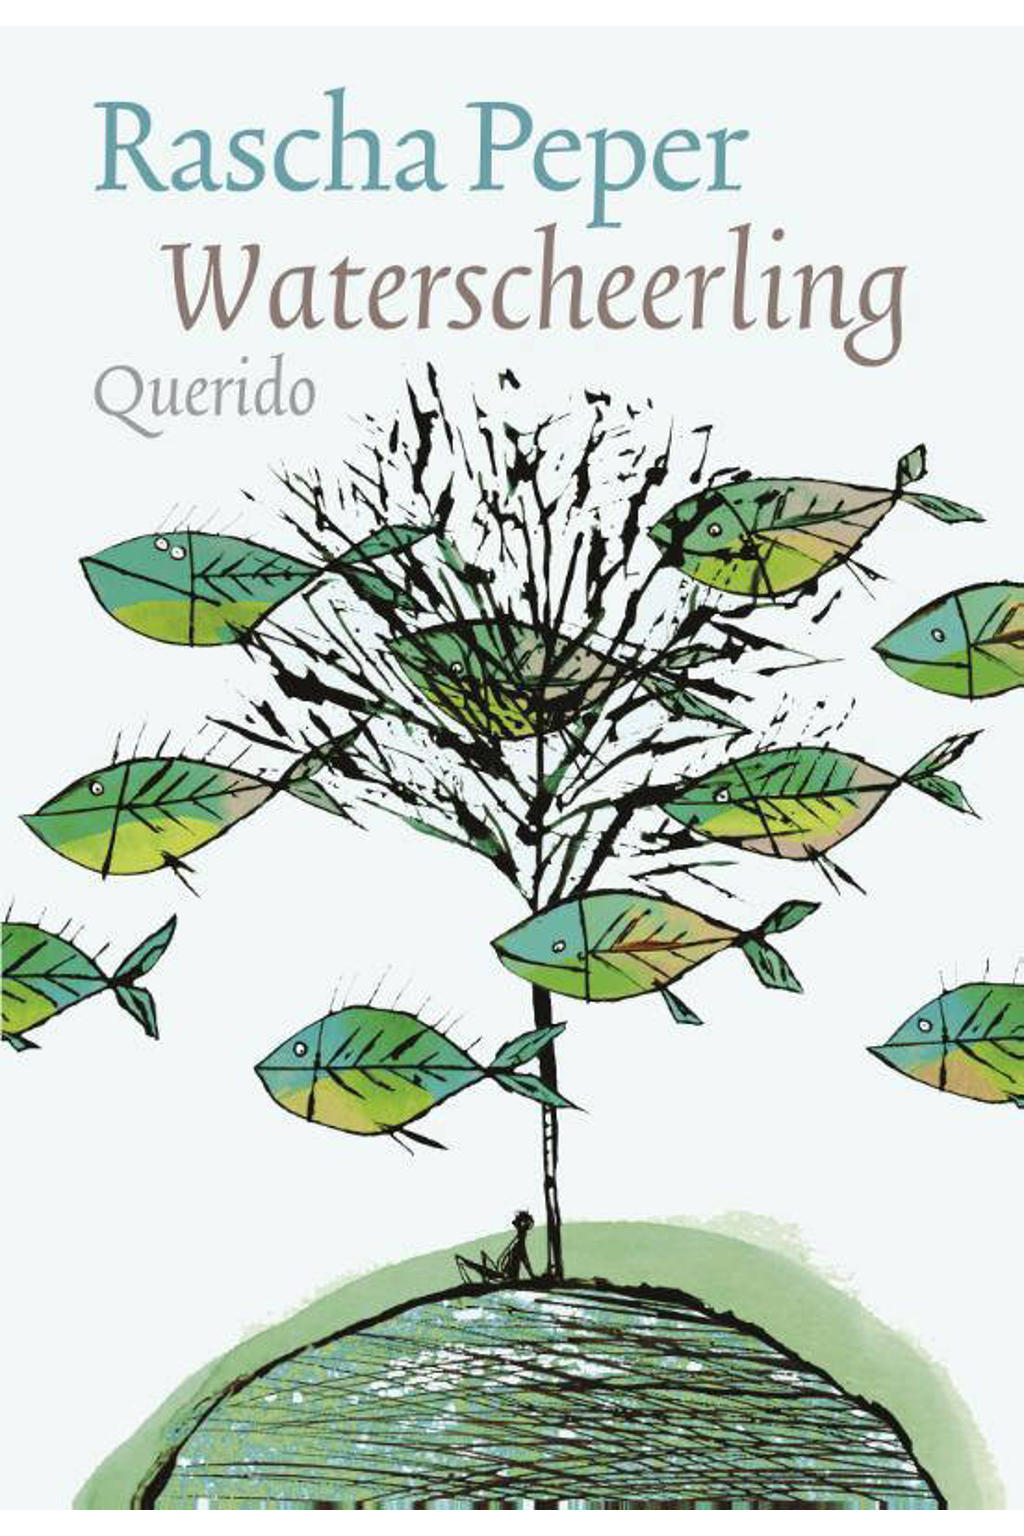 Waterscheerling - Rascha Peper